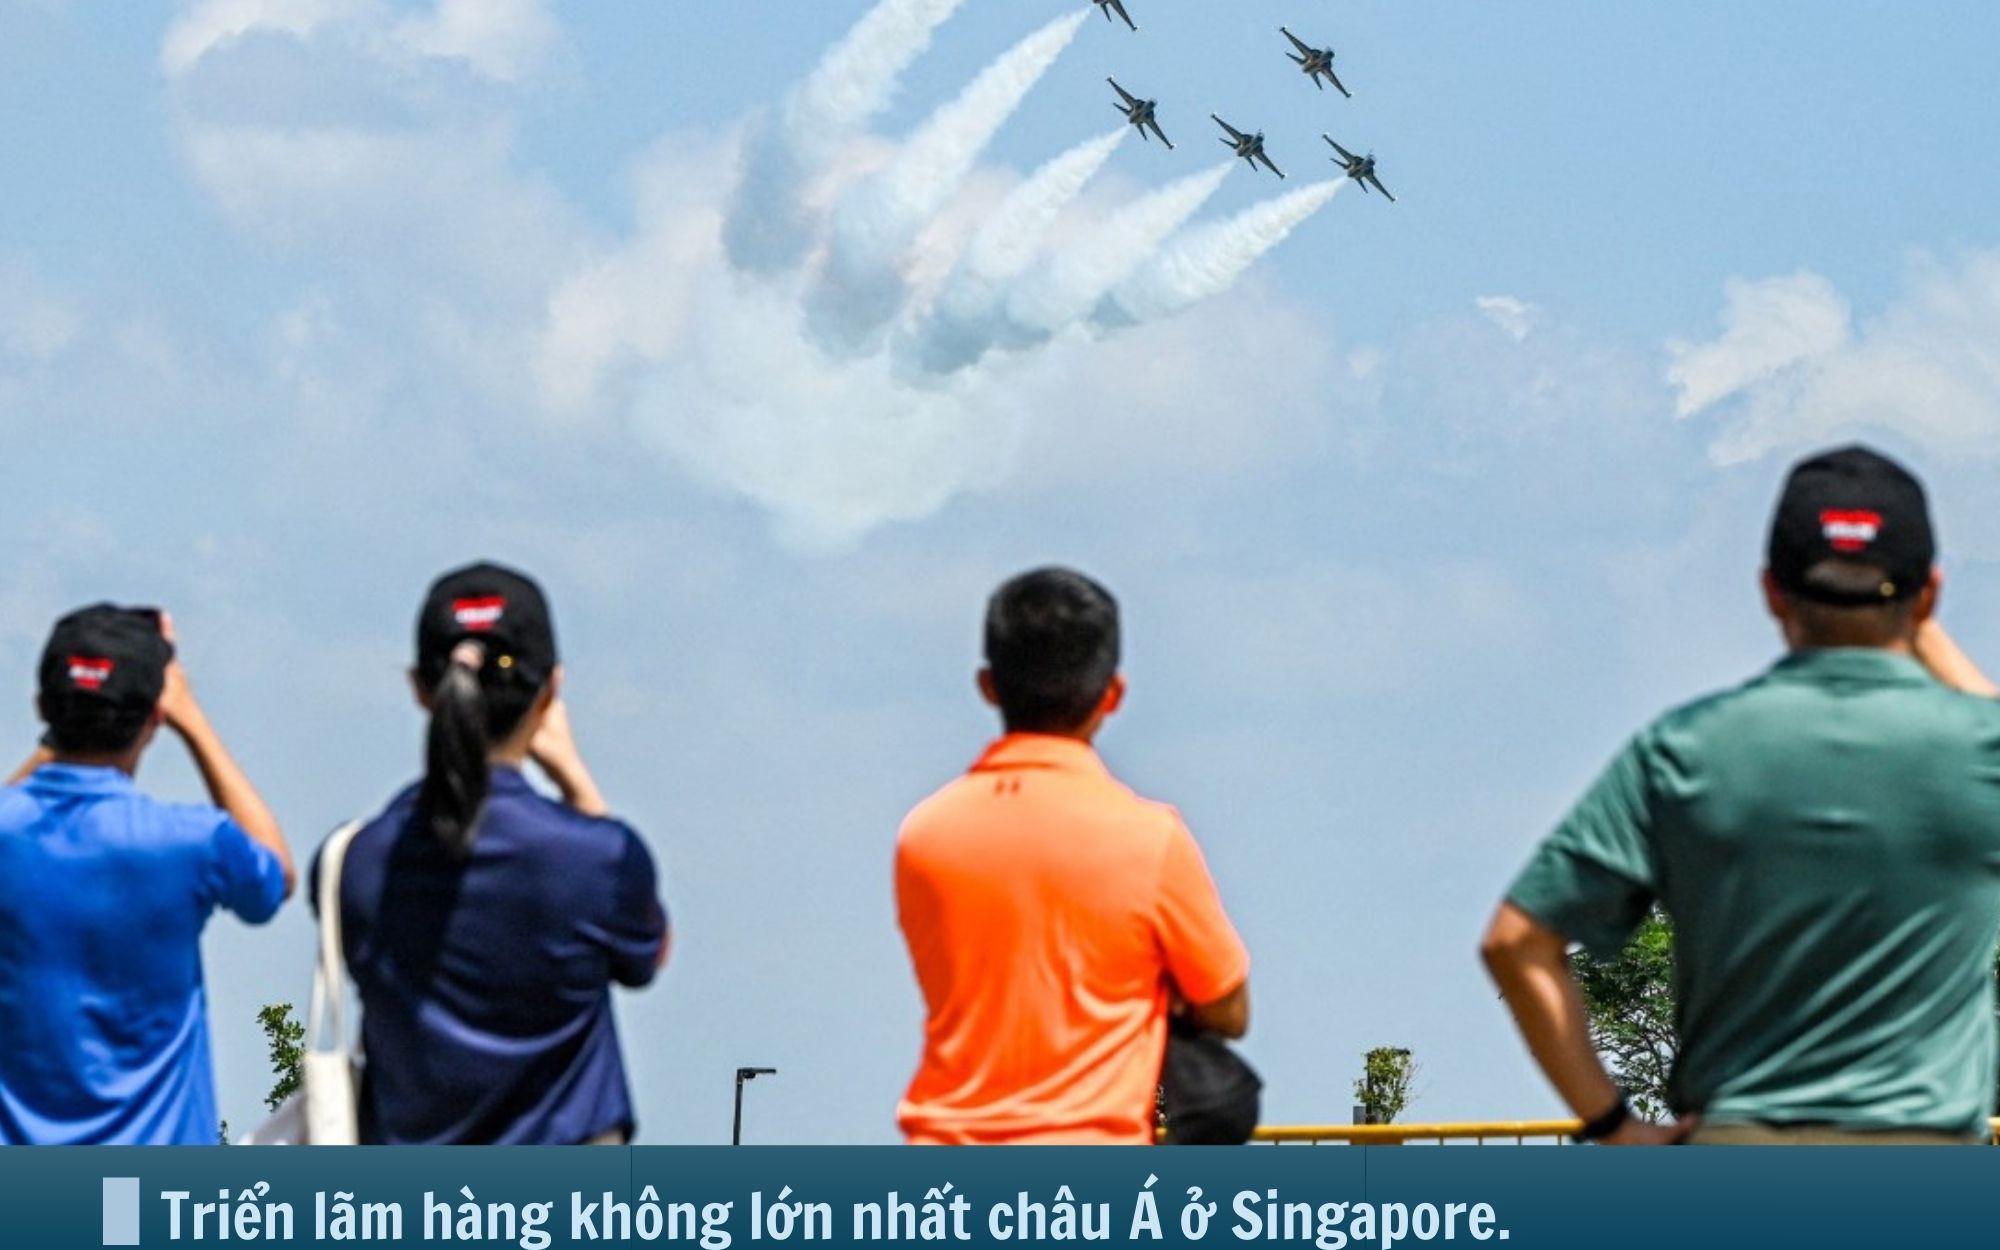 Hình ảnh báo chí 24h: Mãn nhãn với màn máy bay nhào lộn tại triển lãm hàng không lớn nhất châu Á